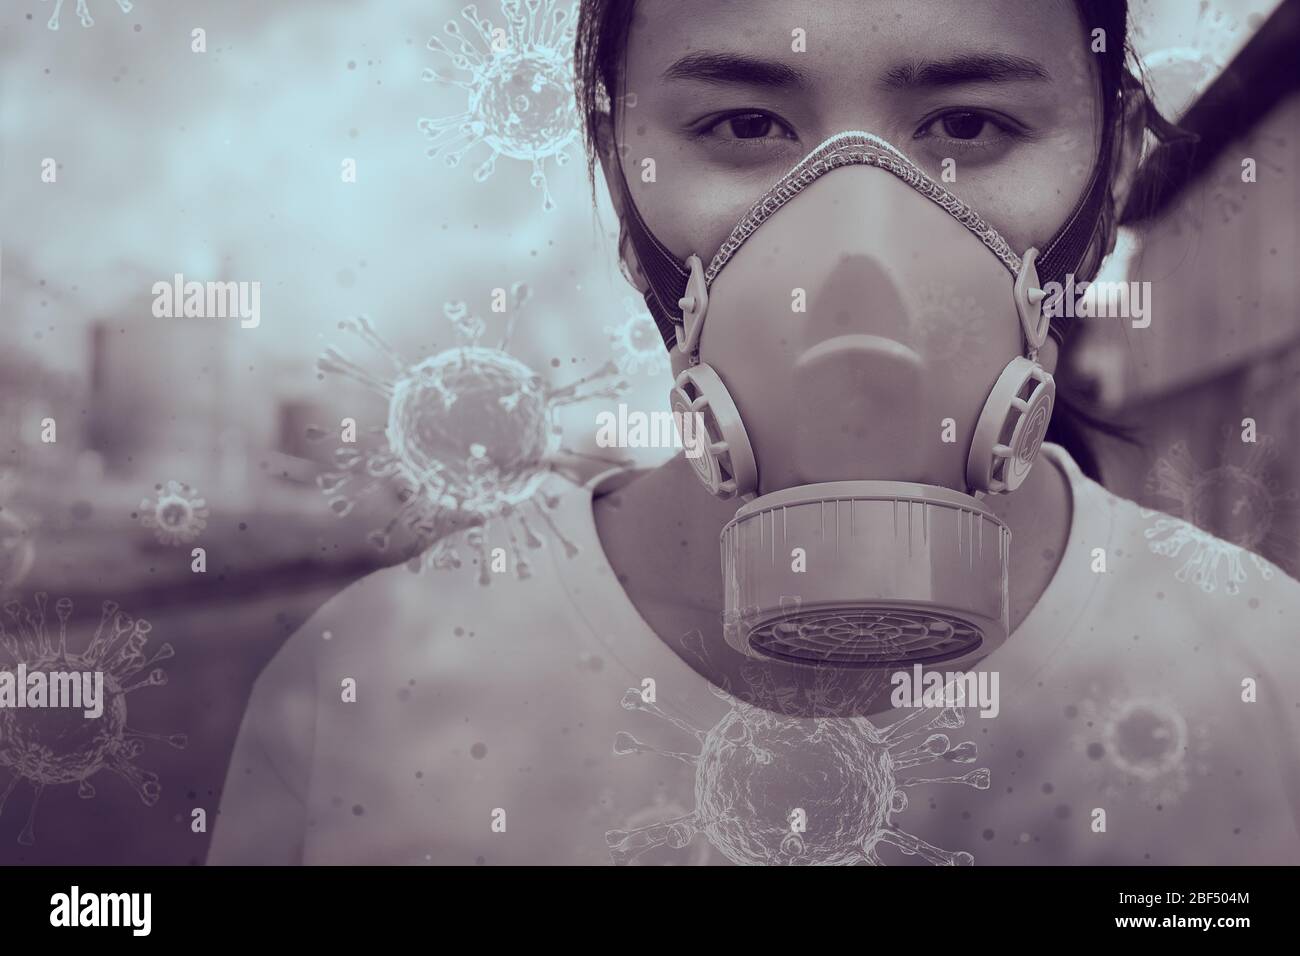 Niña adolescente usando máscara de protección industrial para prevenir peligro polvo PM2.5 polvo gases tóxicos e infección bacteriana virus de la corona o Covid-19 en el aire. Foto de stock